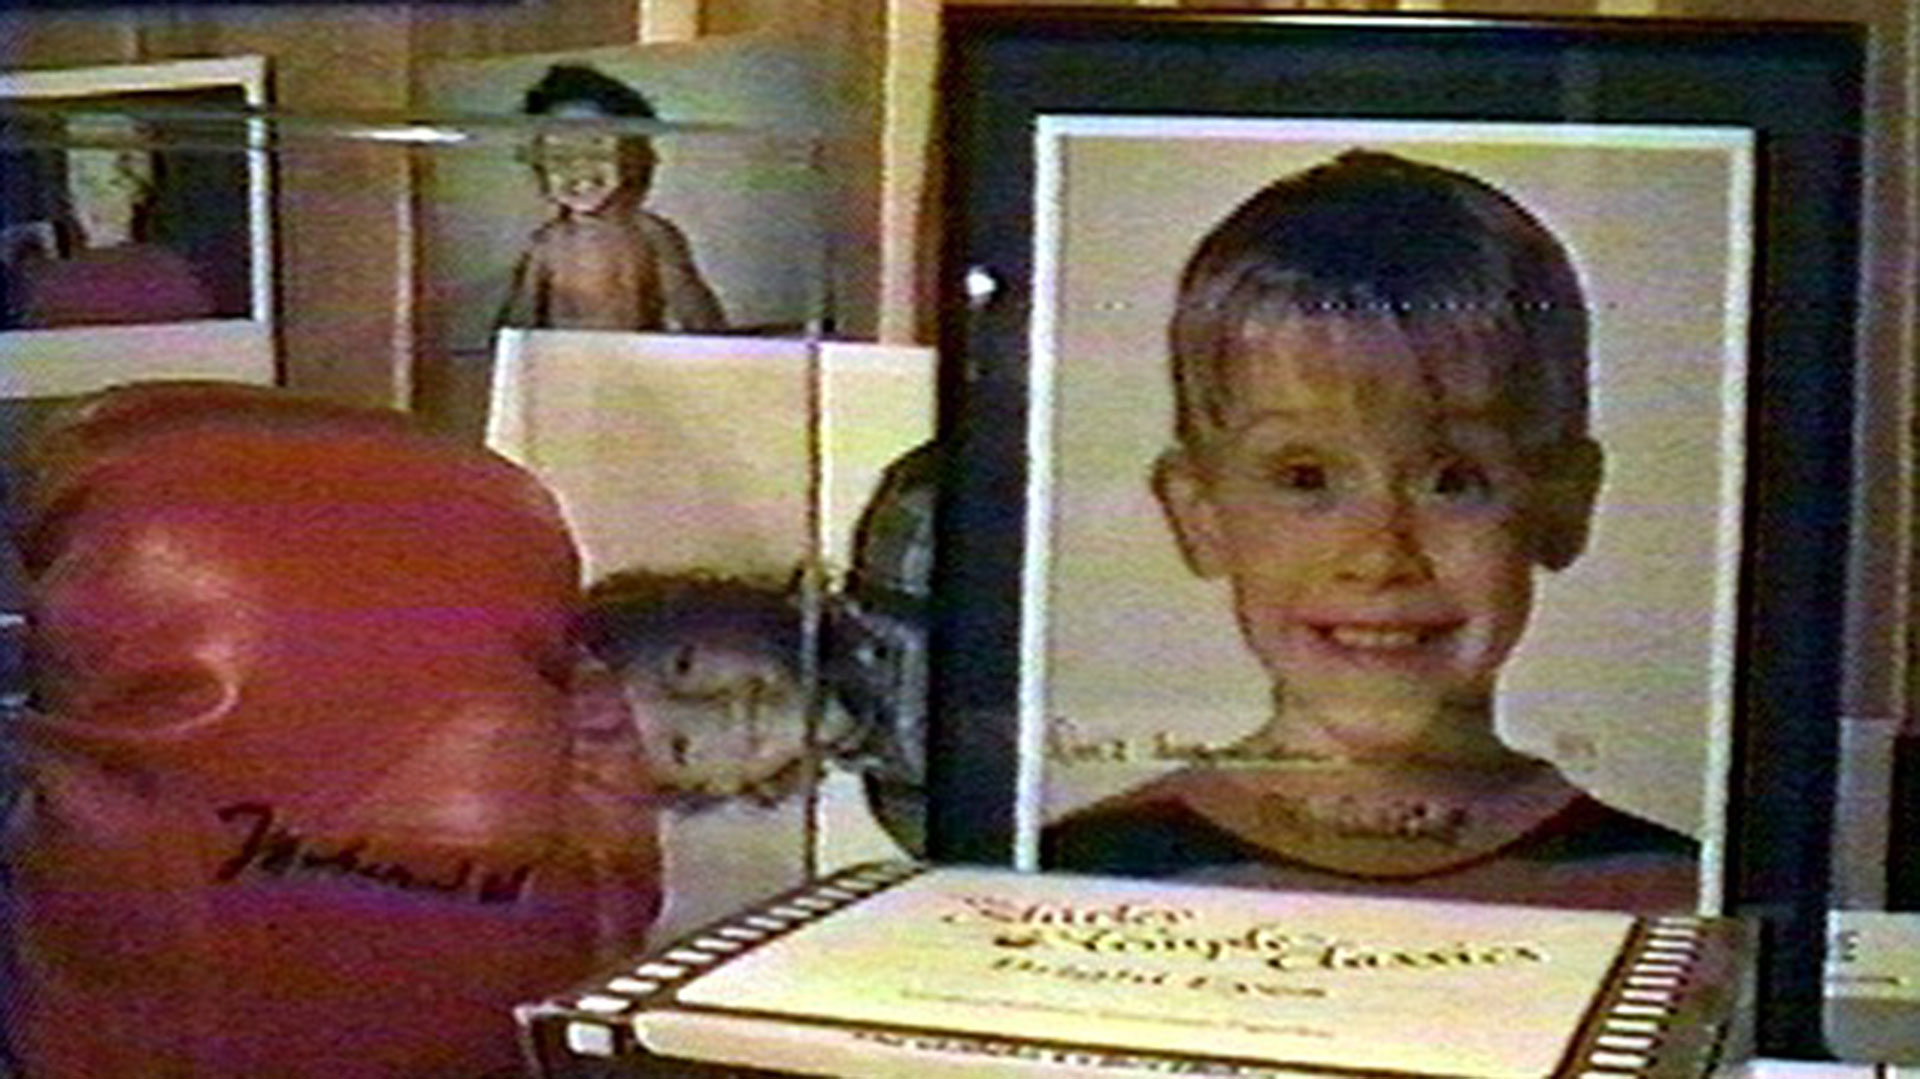 En el interior de la casa de Michael encontraros sedantes, fotos de niños, incluido el actor Macaulay Culkin, quien había colaborado en sus videos, muñecos y muchos objetos tenebrosos